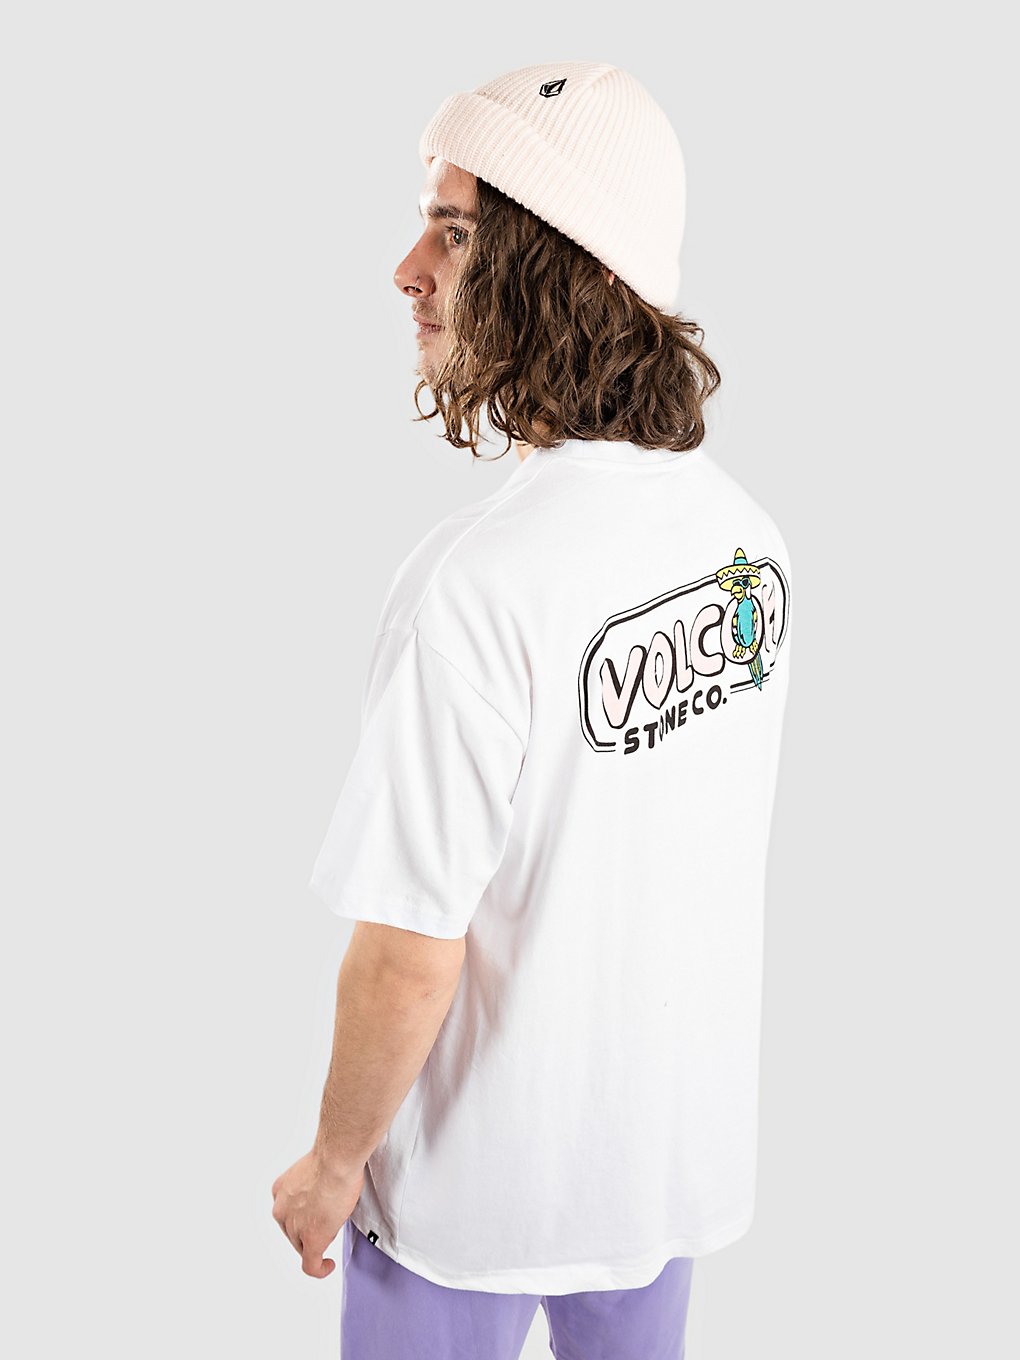 Volcom Chelada T-Shirt white kaufen